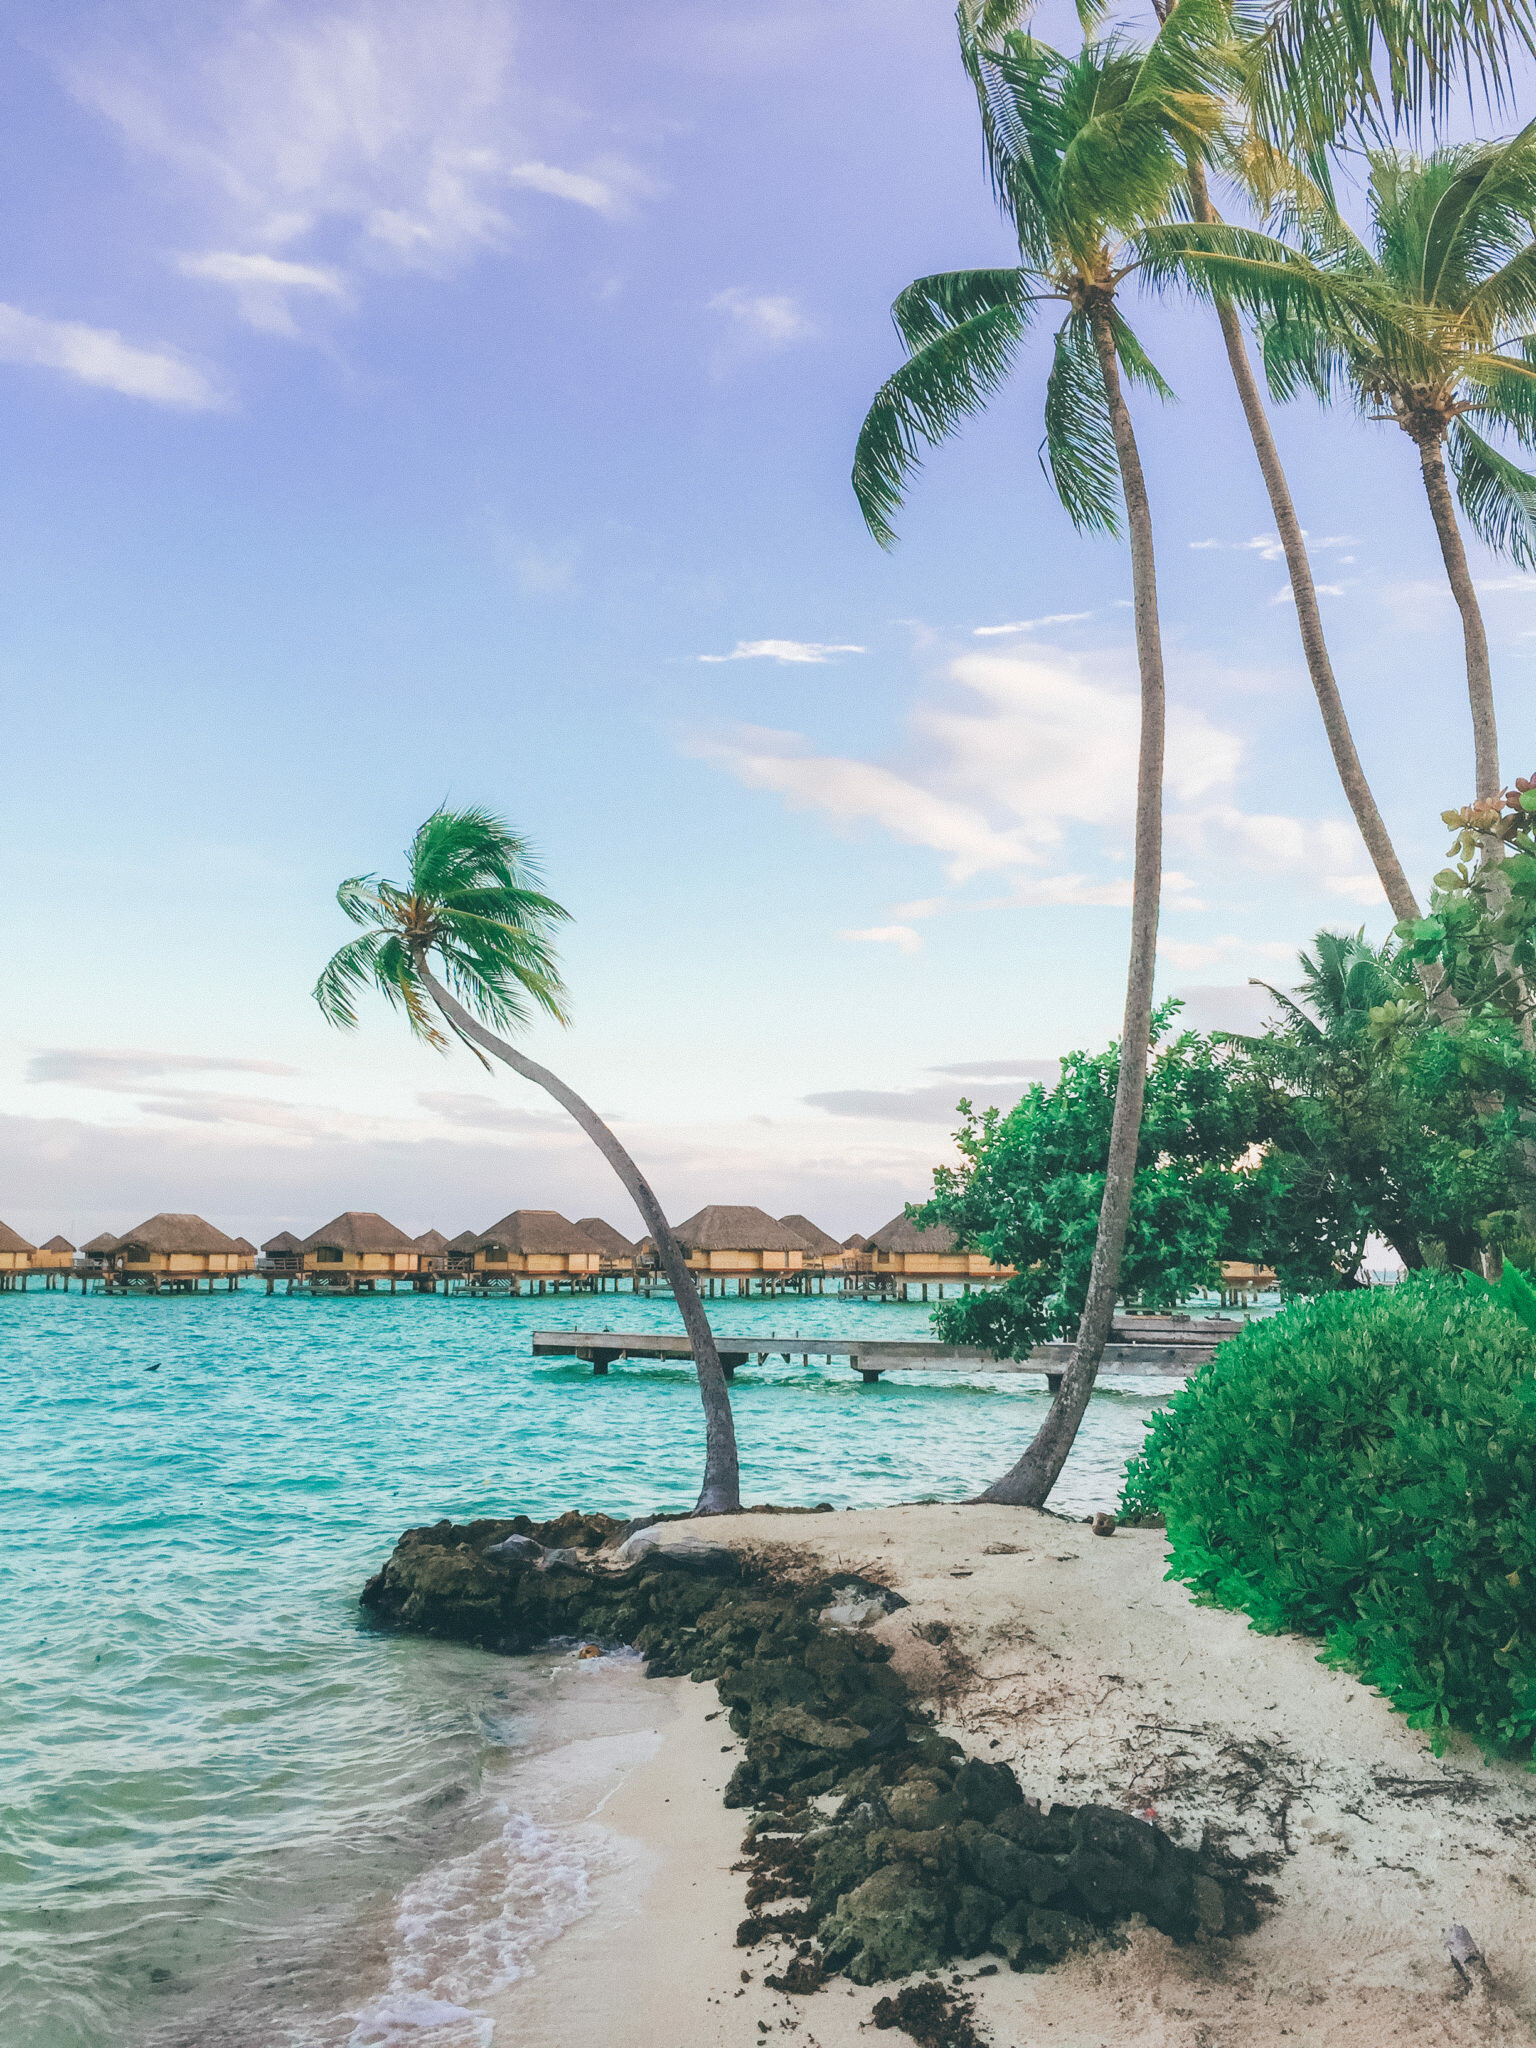 Tahiti: Tahiti's most luxurious resort, Bora Bora, Tropical island paradise. 1540x2050 HD Wallpaper.